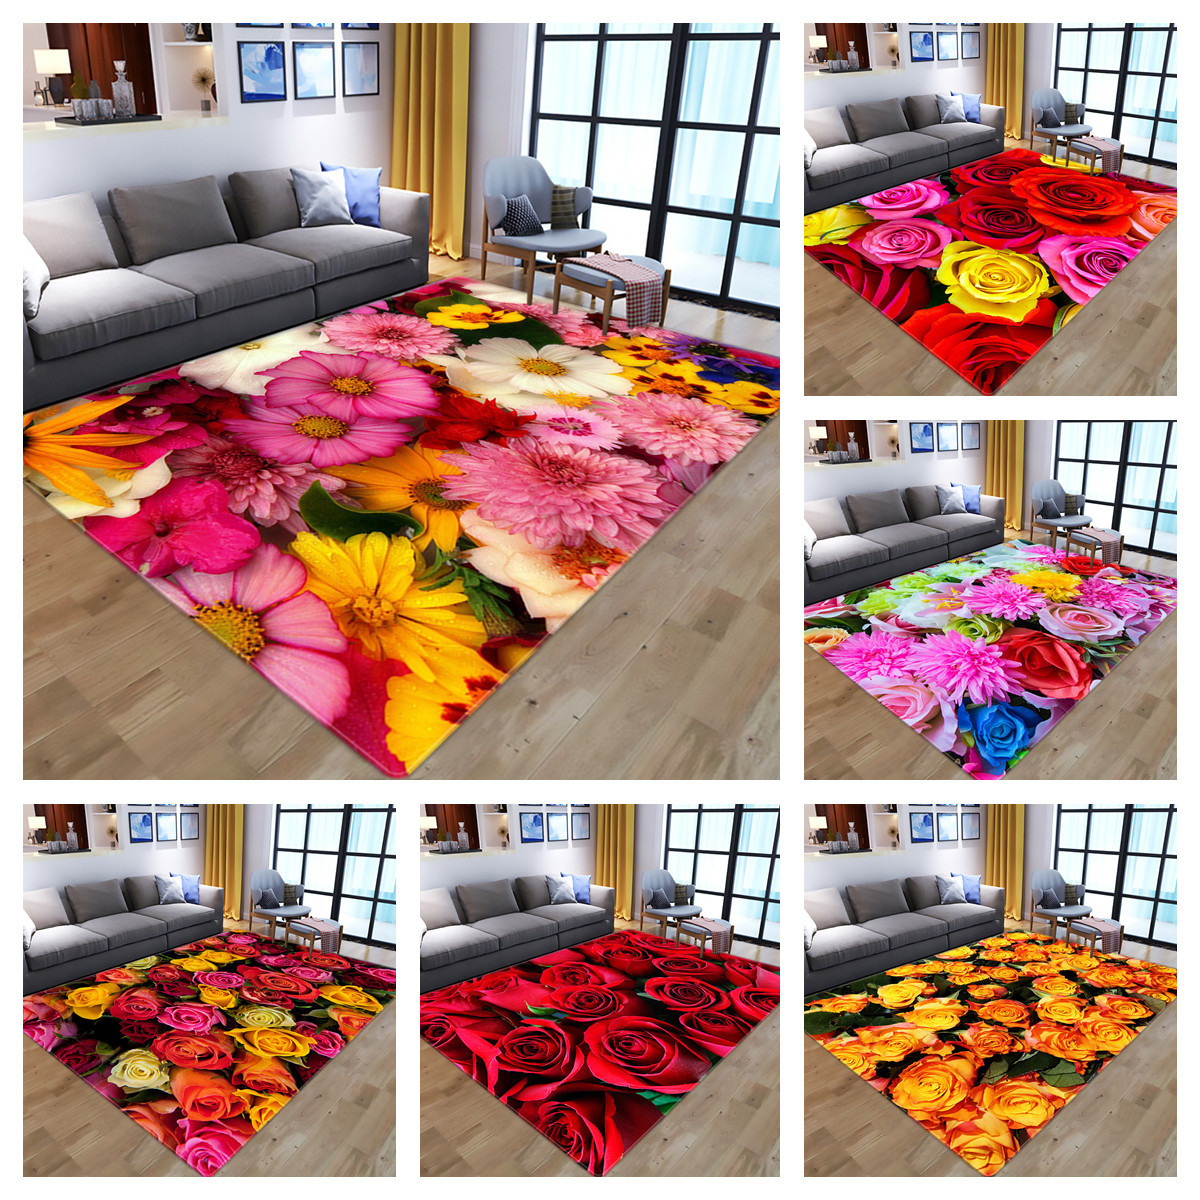 新款法莱绒家用地垫 3D花朵图片印花客厅卧室阳台茶几毯批发定 制